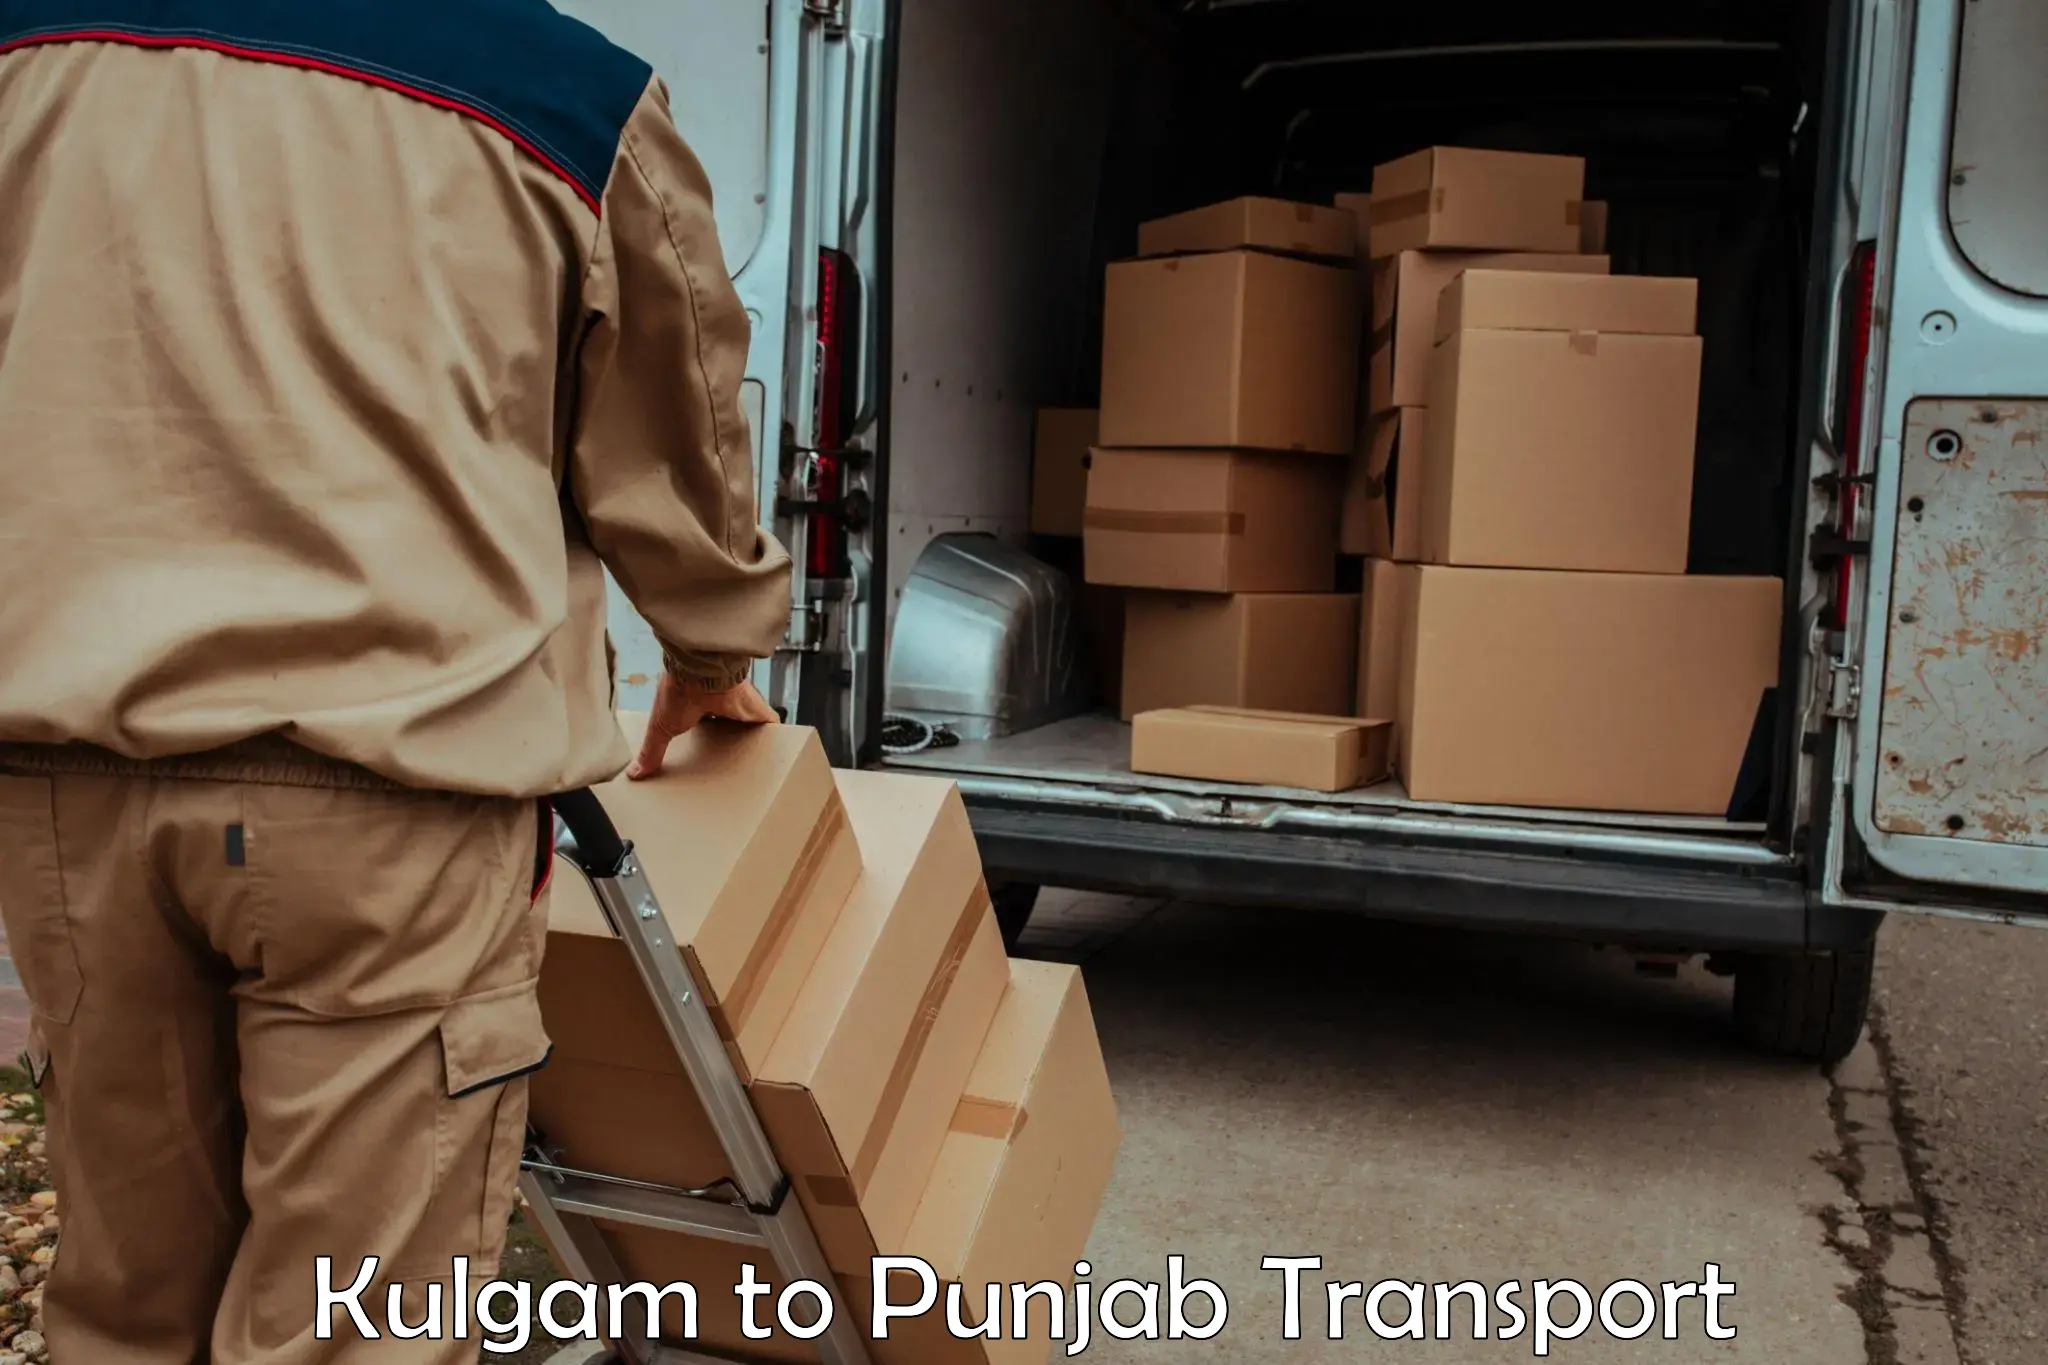 Door to door transport services in Kulgam to Punjab